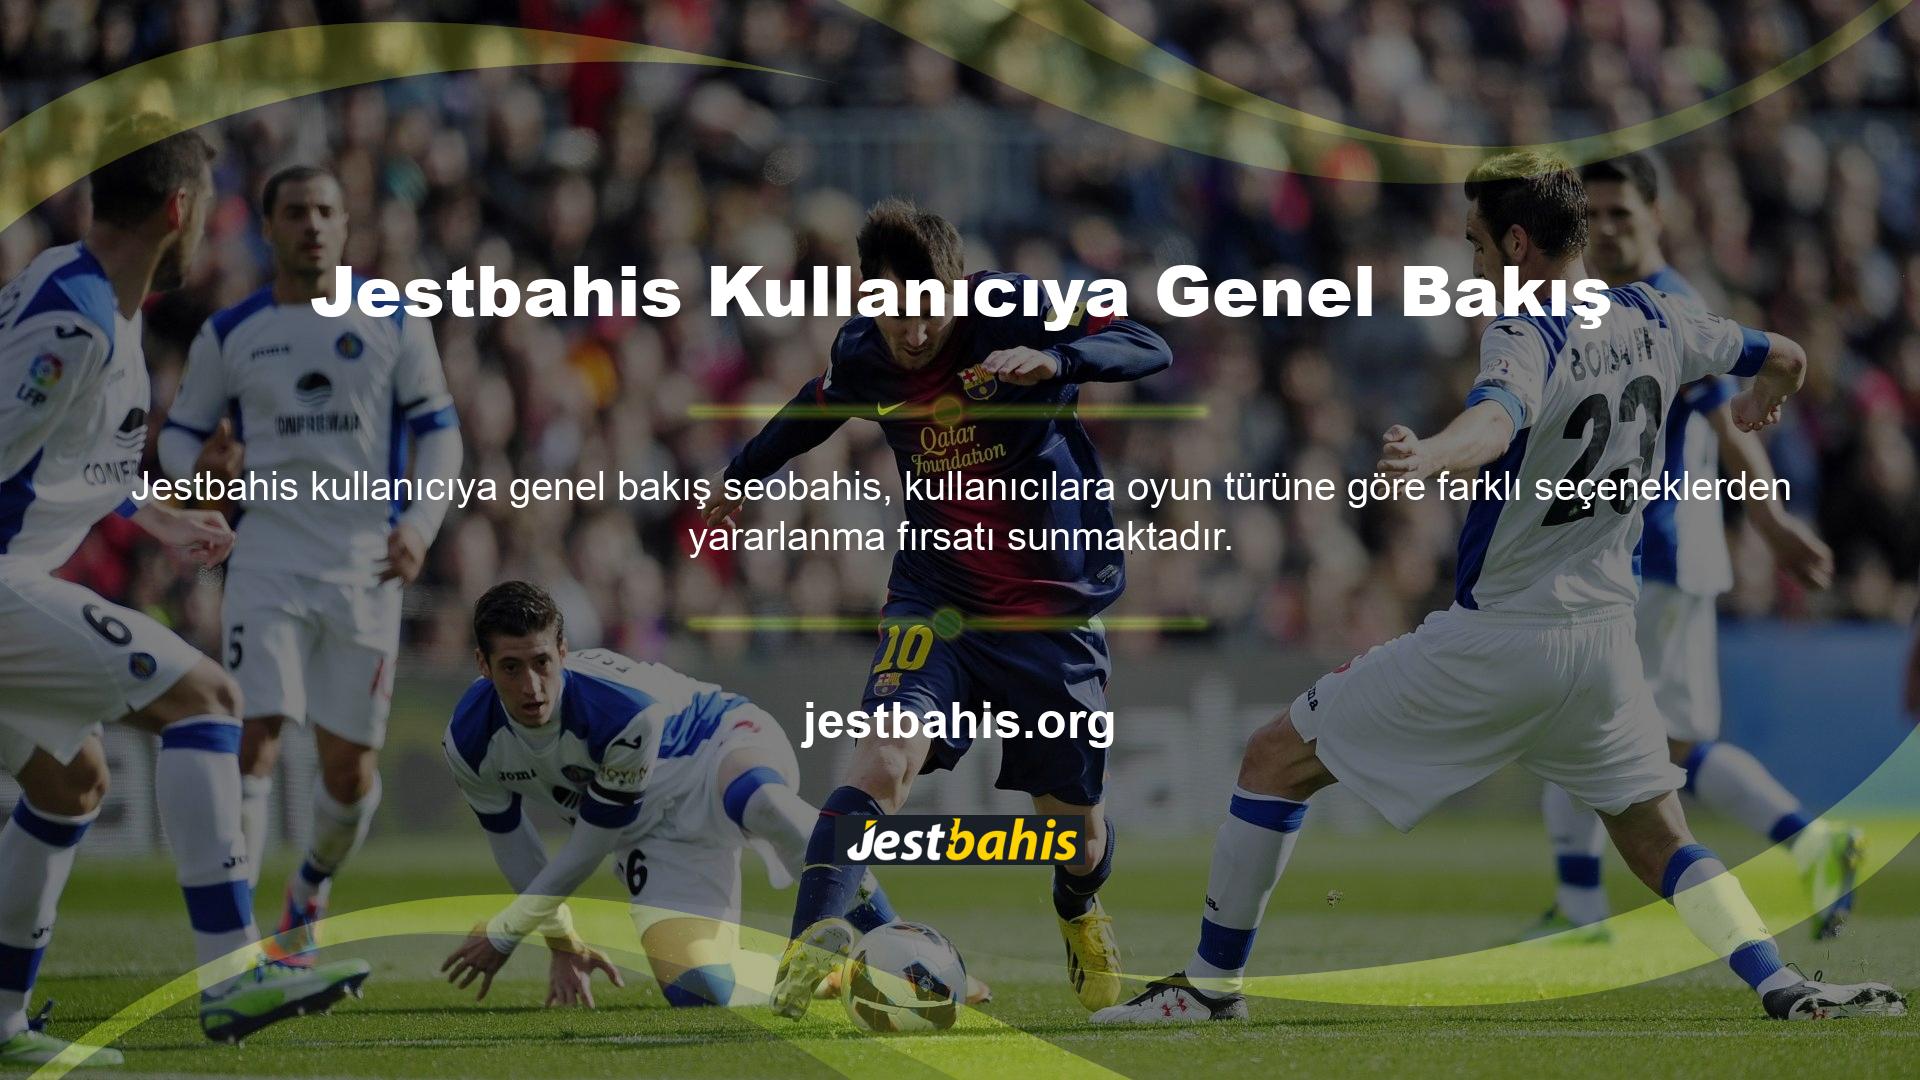 Site, Jestbahis kullanıcılarına çok çeşitli bahis ve casino oyunlarına kolay erişim imkanı sunmaktadır